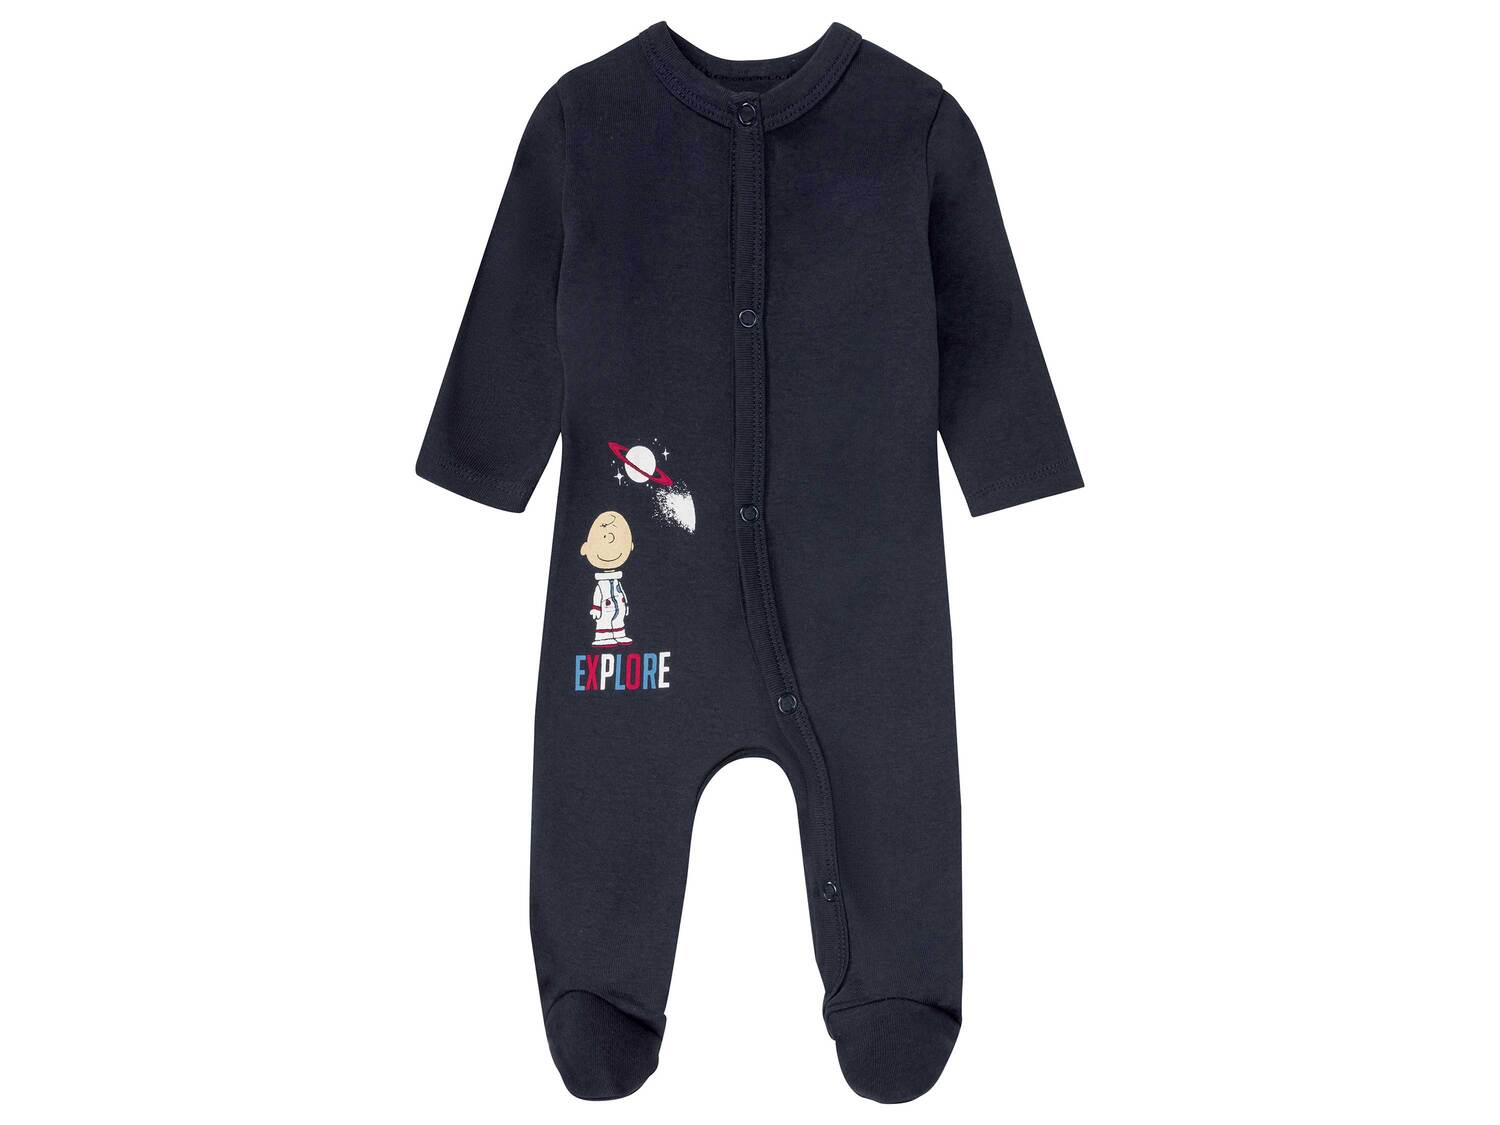 Pyjama bébé en coton bio , le prix 4.99 € 
- Du 0-2 mois au 12-14 mois selon ...